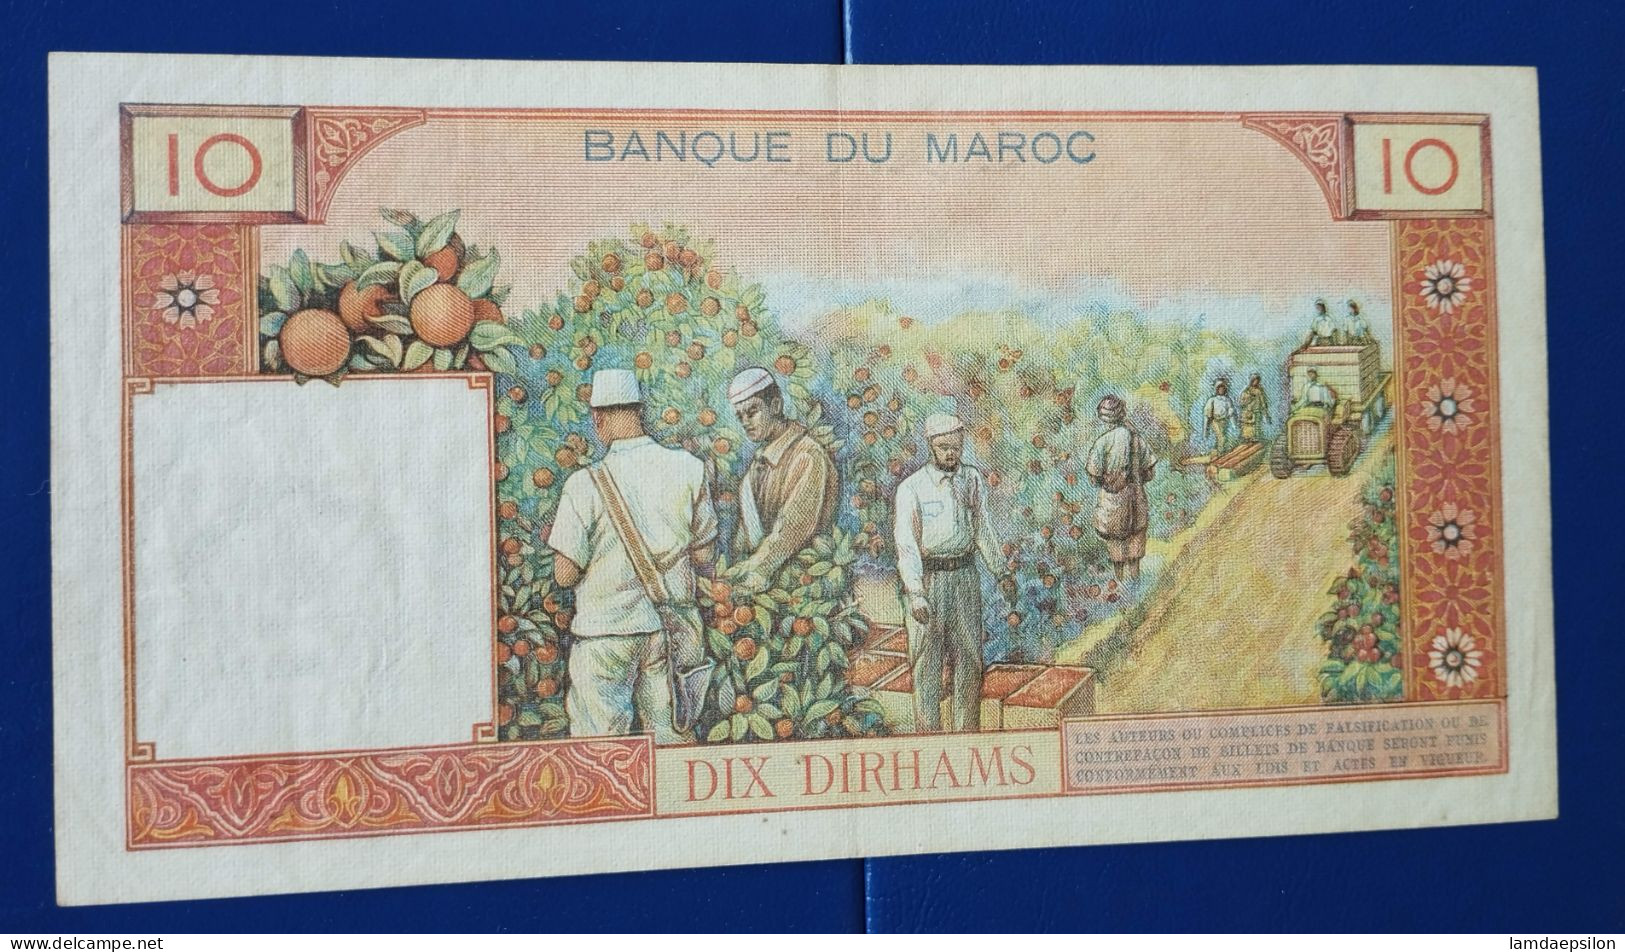 MAROC MOROCCO MARRUECOS MAROKKO BANQUE DU MAROC  10 DIRHAMS 1965 - Maroc